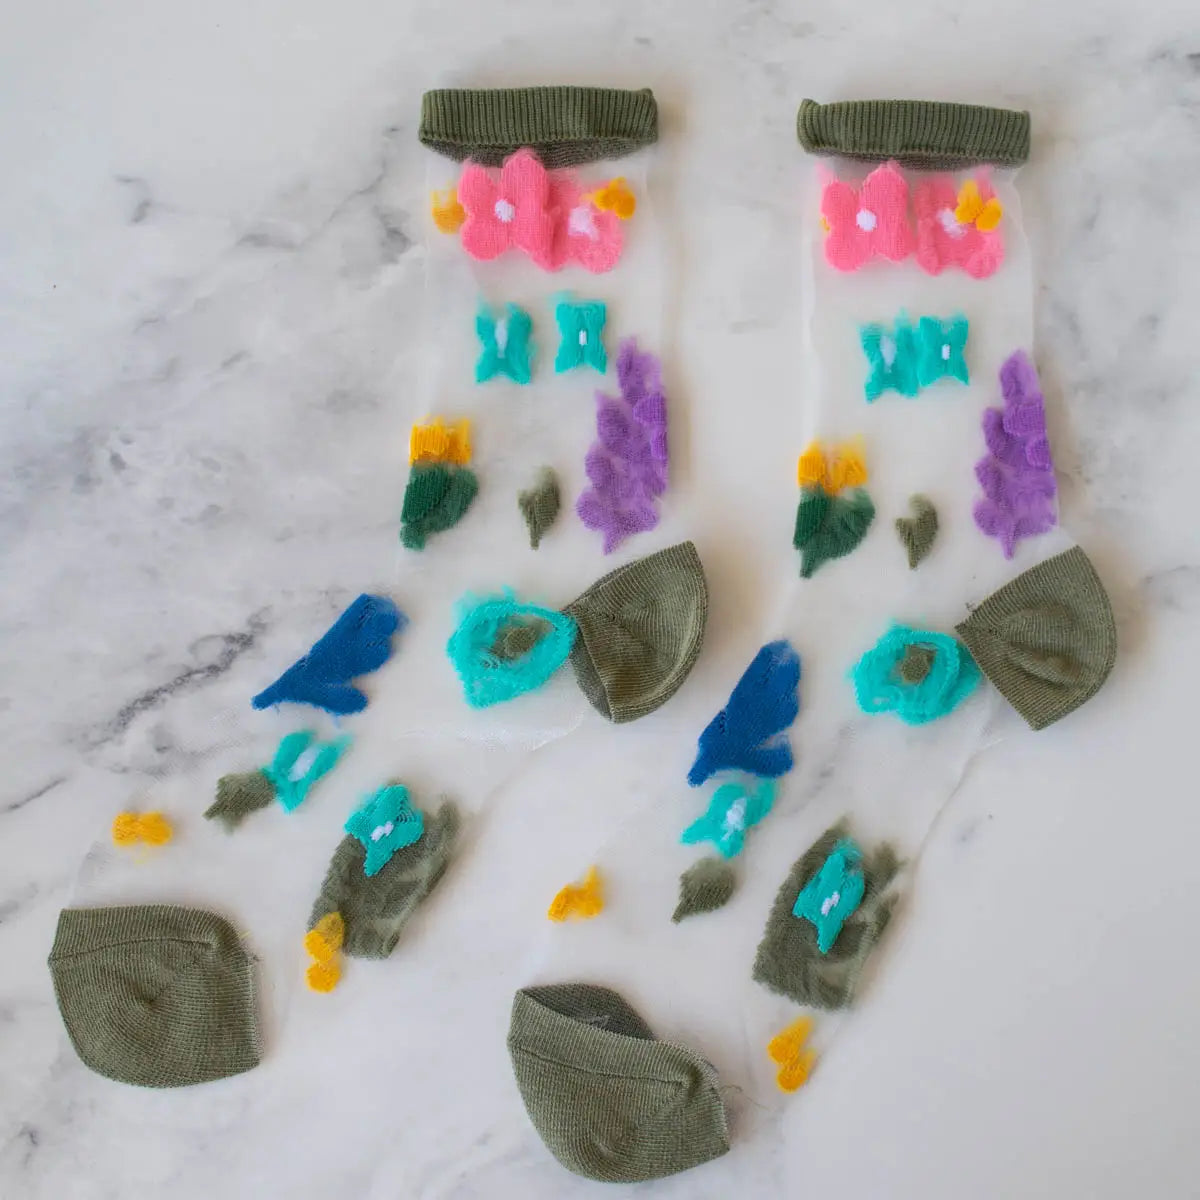 Retro Floral Mesh Socks